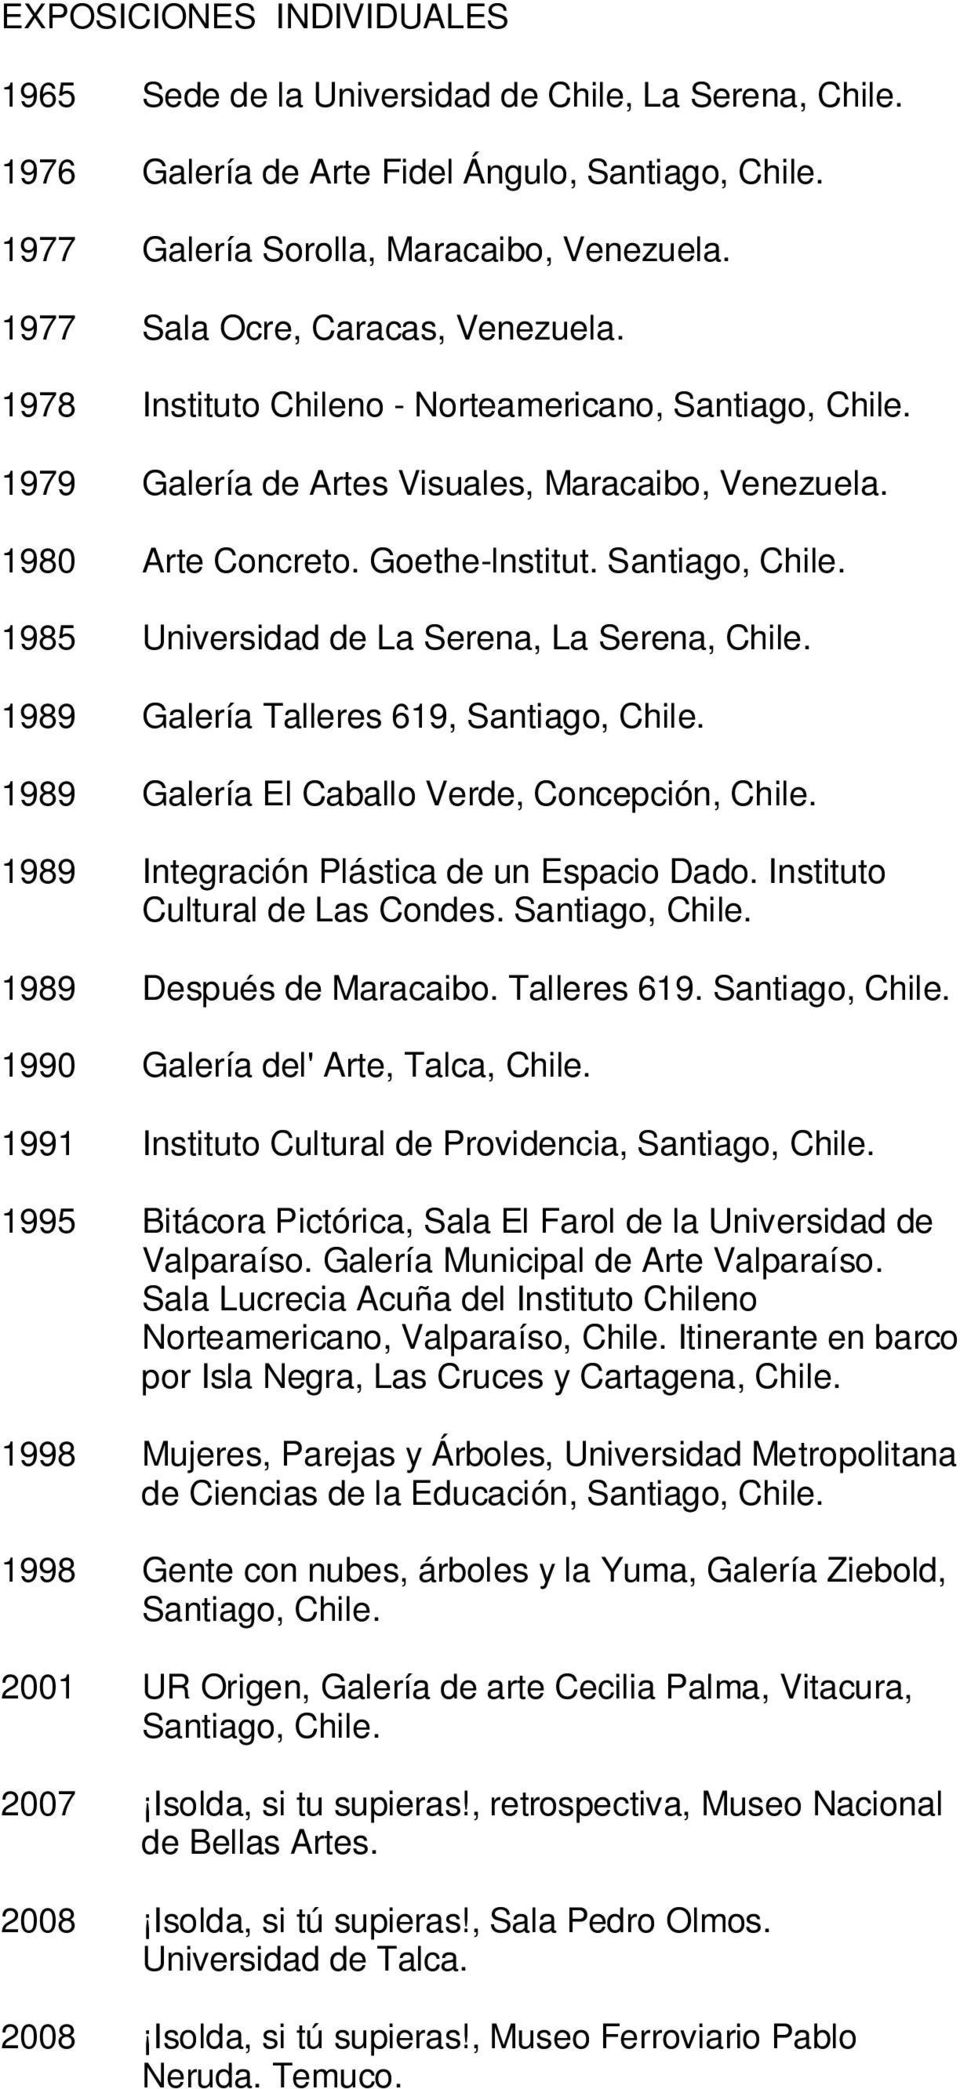 1985 Universidad de La Serena, La Serena, 1989 Galería Talleres 619, 1989 Galería El Caballo Verde, Concepción, 1989 Integración Plástica de un Espacio Dado. Instituto Cultural de Las Condes.